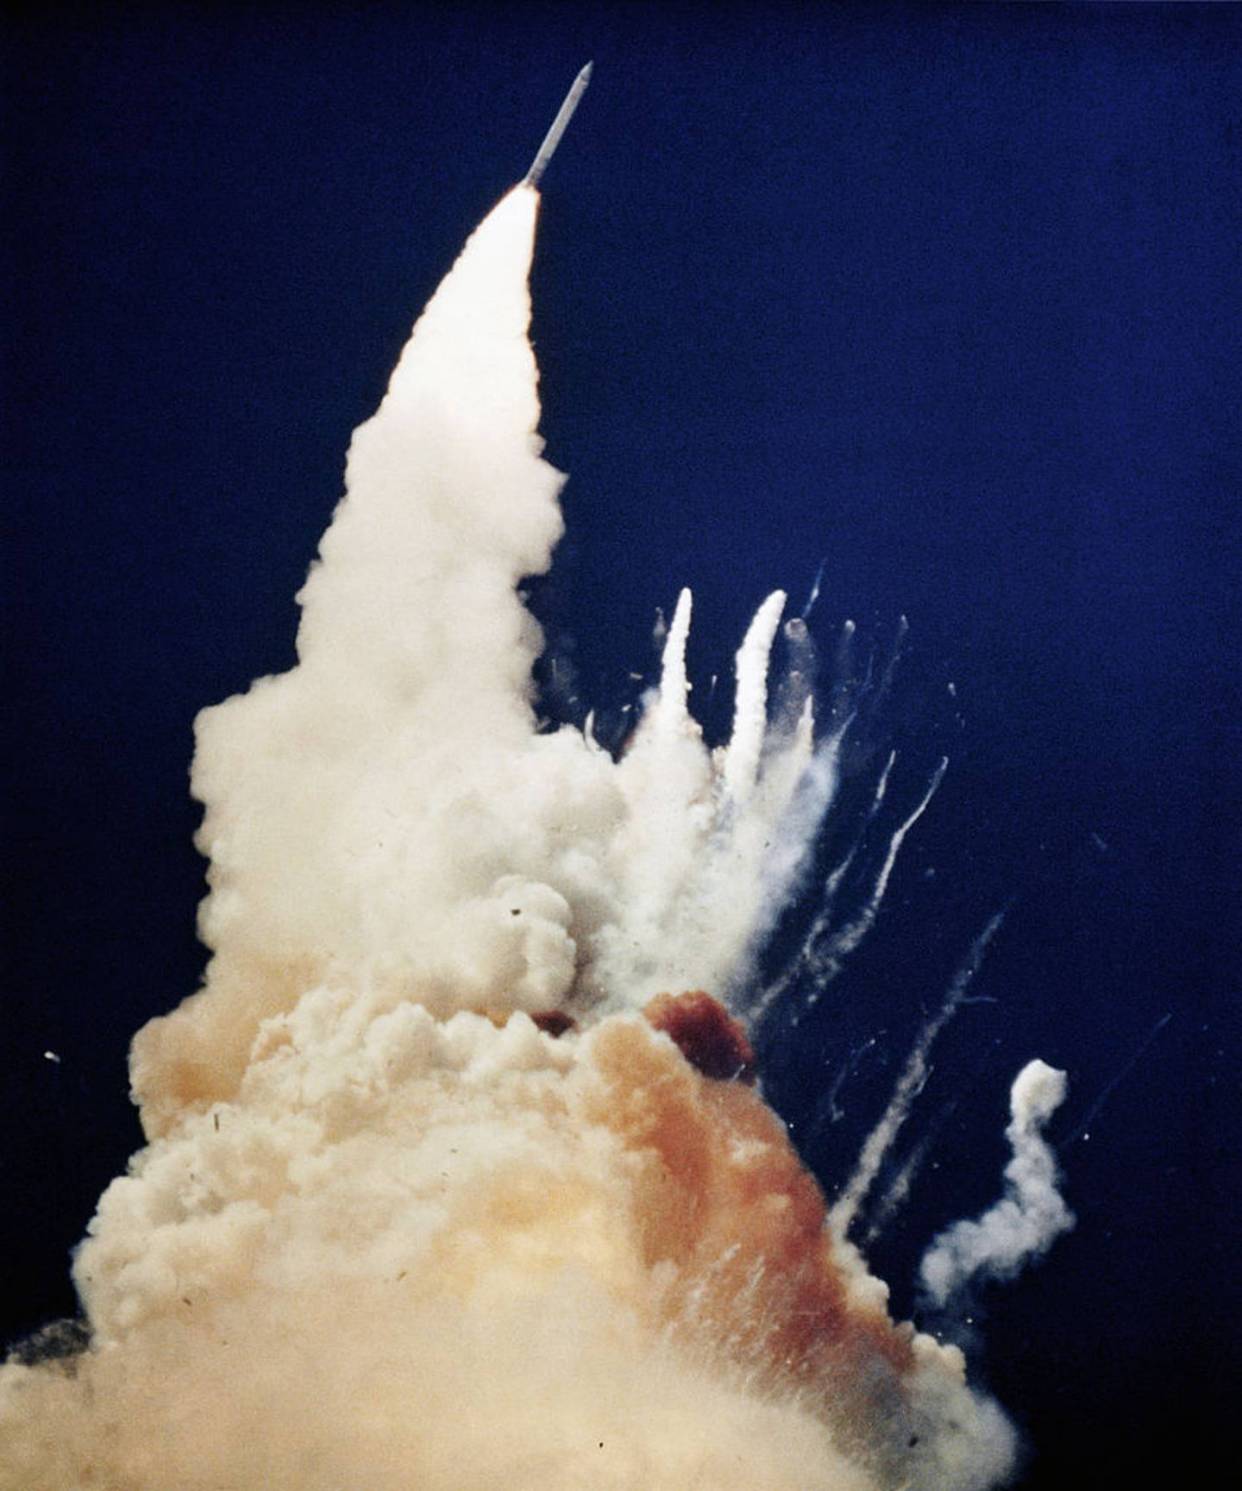 历史上的今天 1986年1月28日 挑战者号航天飞机升空后爆炸(多图)